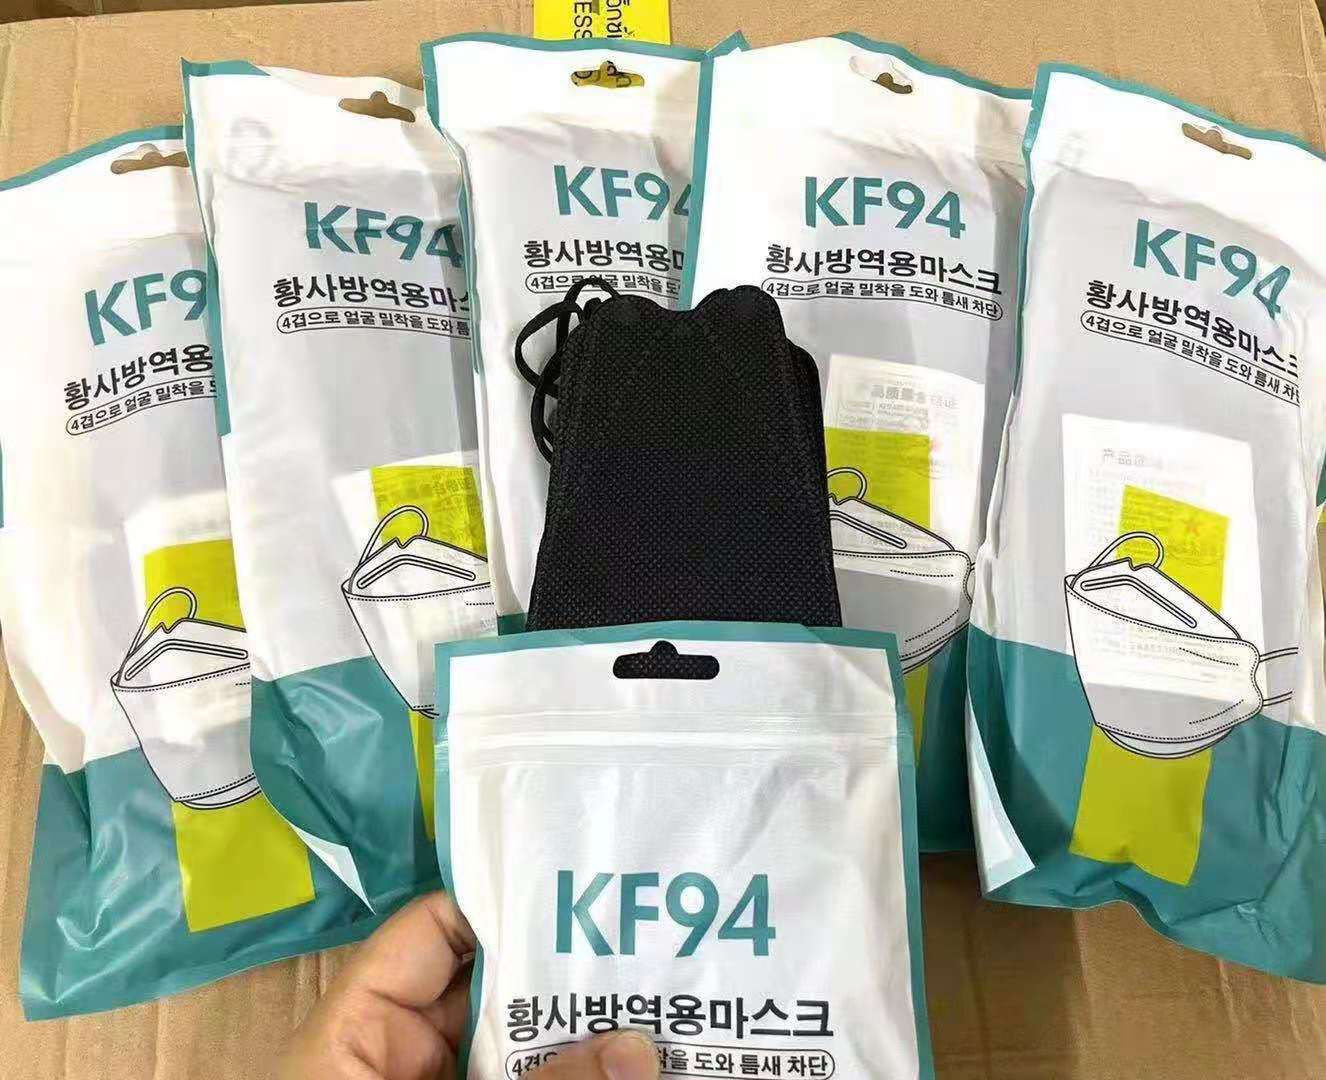 แมสเกาหลี 4D รุ่นใหม่ KF94 [แพค10ชิ้น] งานคุณภาพ  pm2.5 หน้ากากอนามัย 4D แมส4D(ดำ)